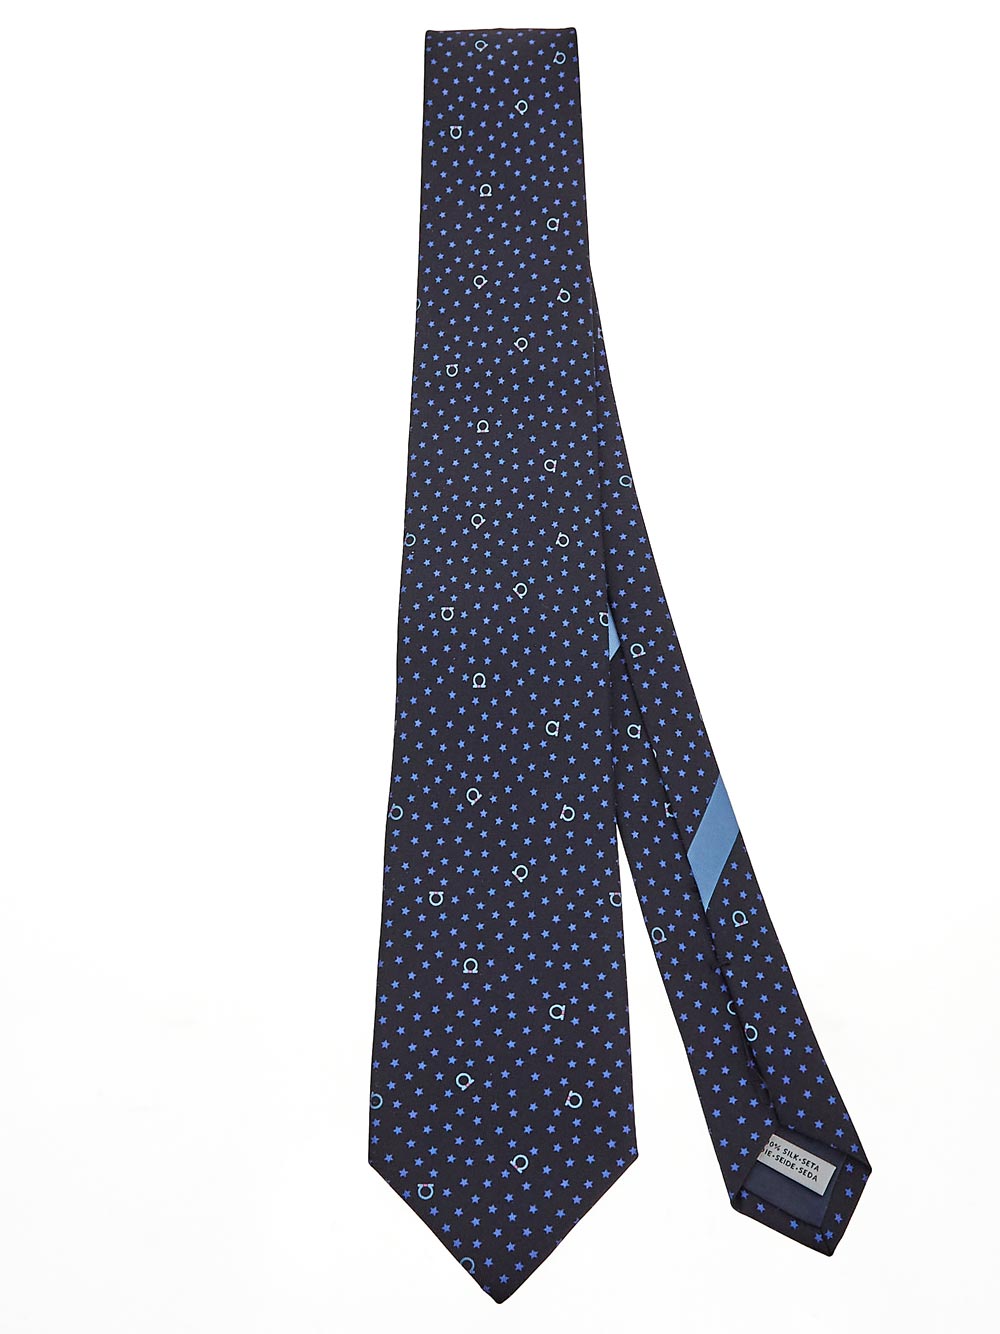 FERRAGAMO Printed Tie NAVY/MULTI